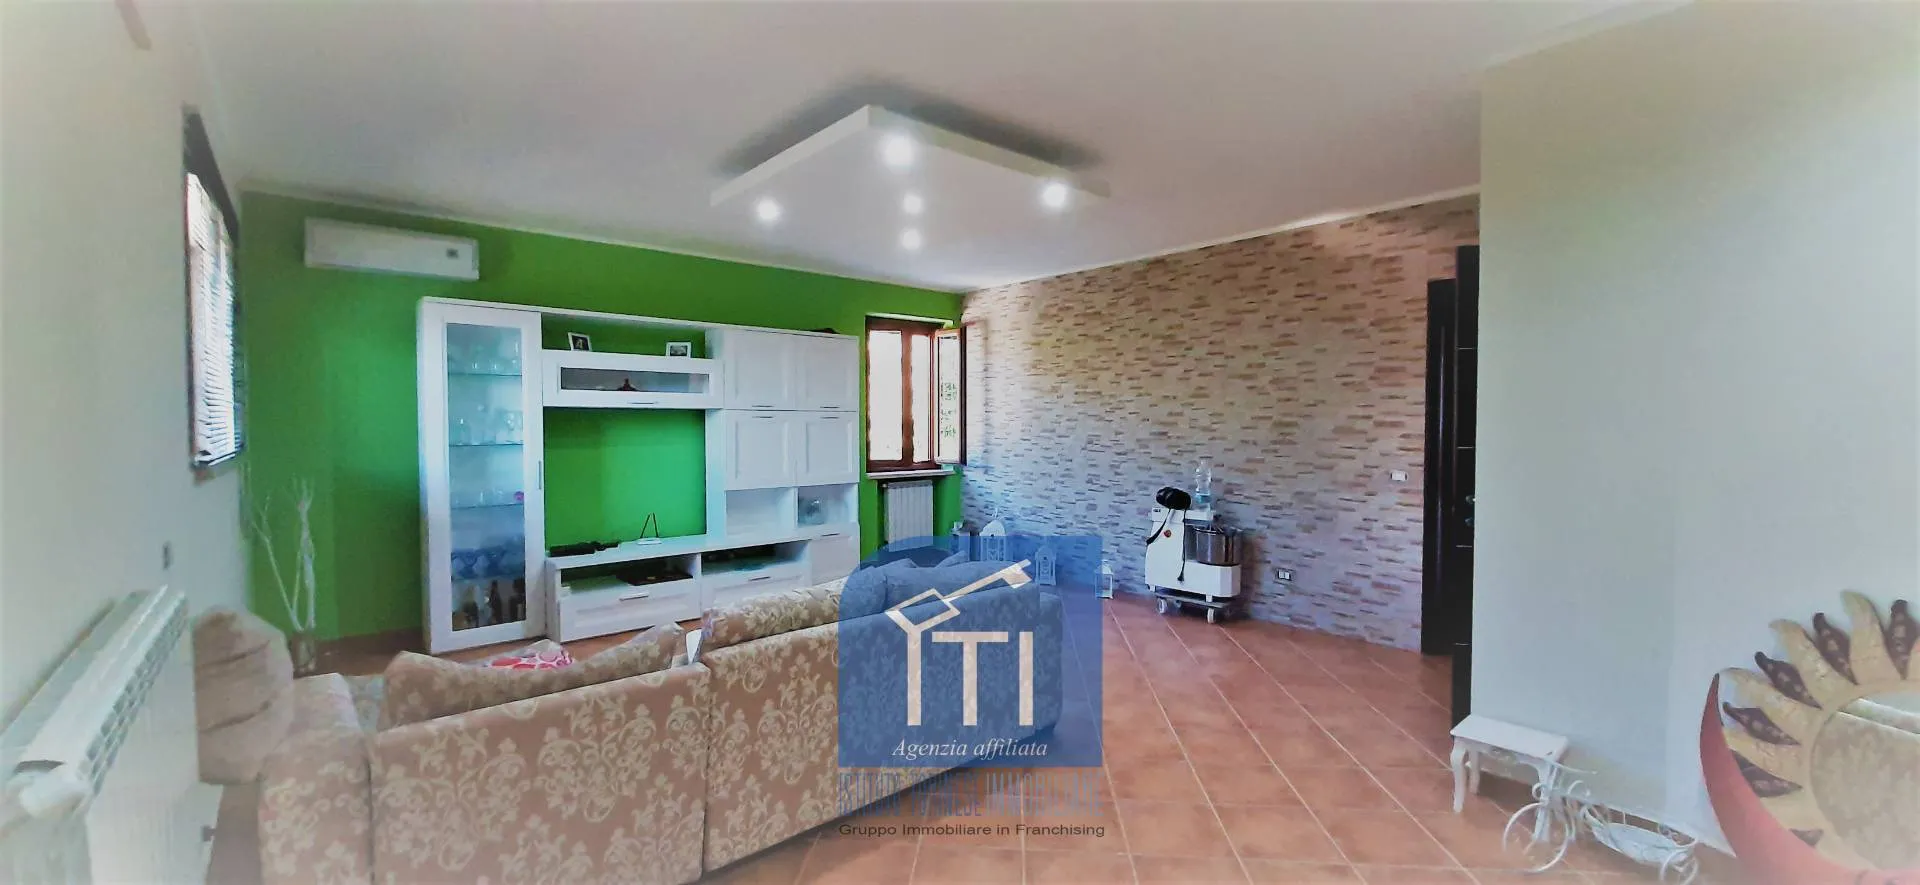 Immagine per Villa in vendita a Mignano Monte Lungo via oliveto arso